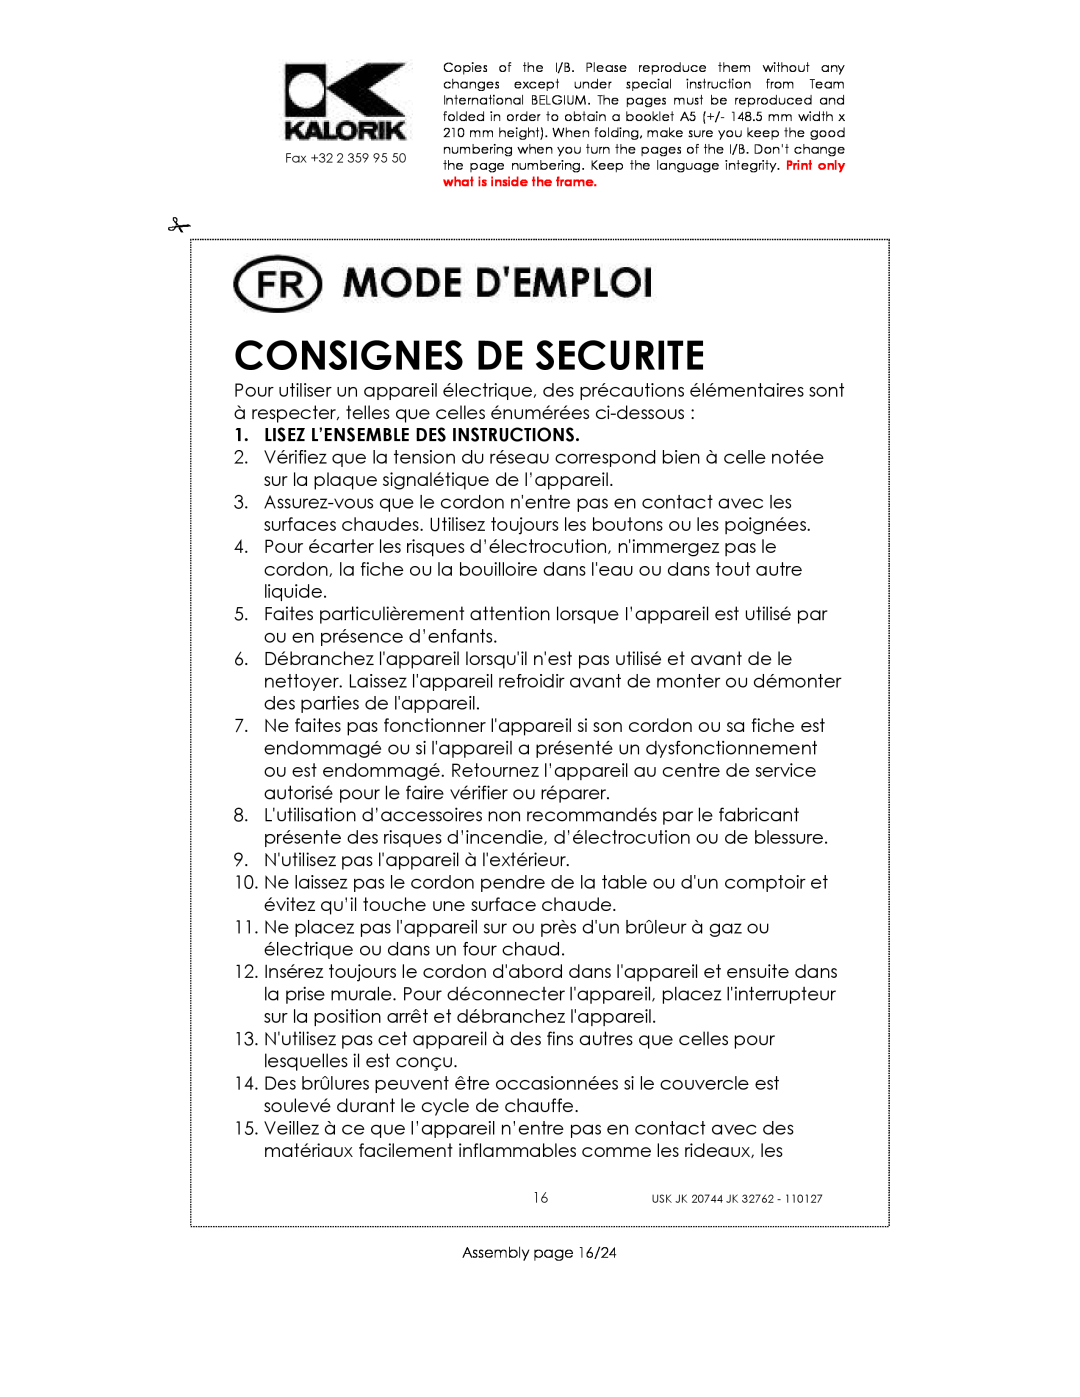 Kalorik USK JK 32762, USK JK 20744 manual Consignes De Securite, Lisez L’Ensemble Des Instructions 